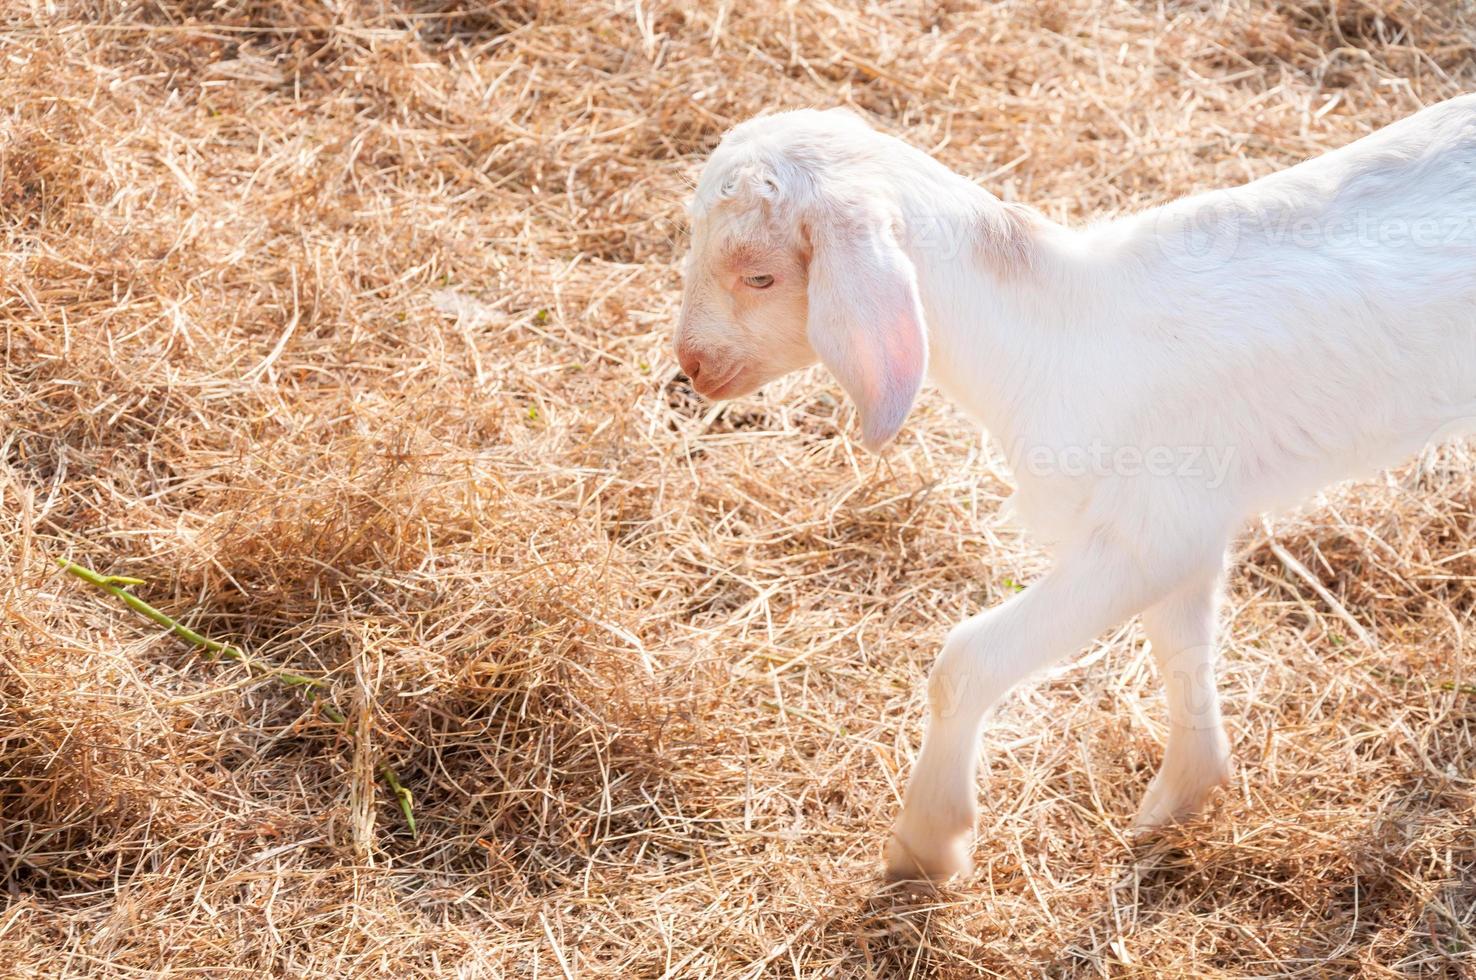 cabras brancas na fazenda, cabra bebê em uma fazenda foto